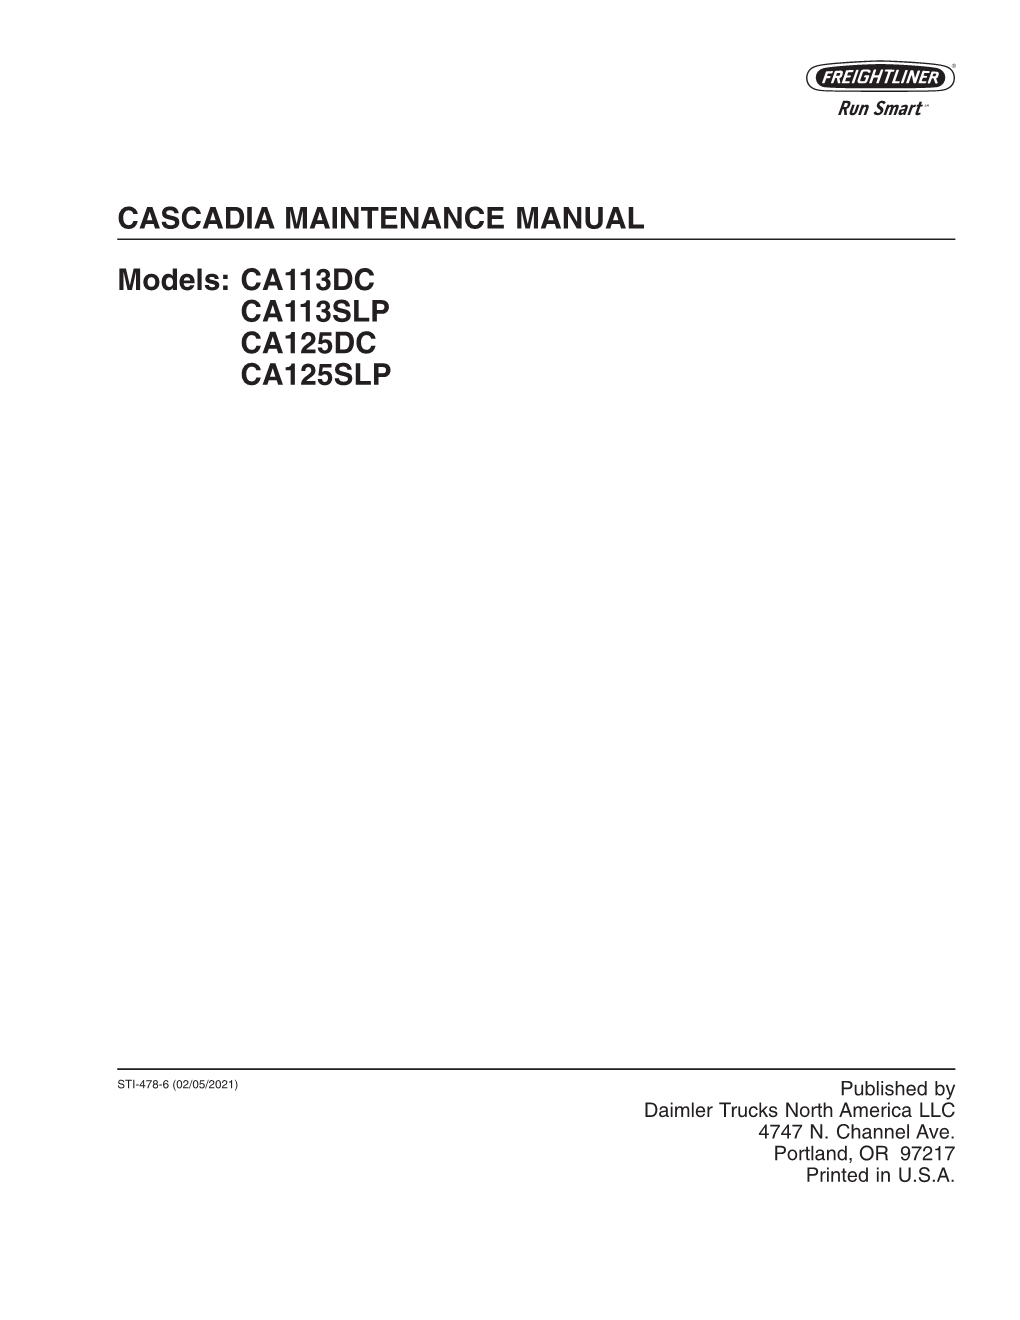 Cascadia Maintenance Manual